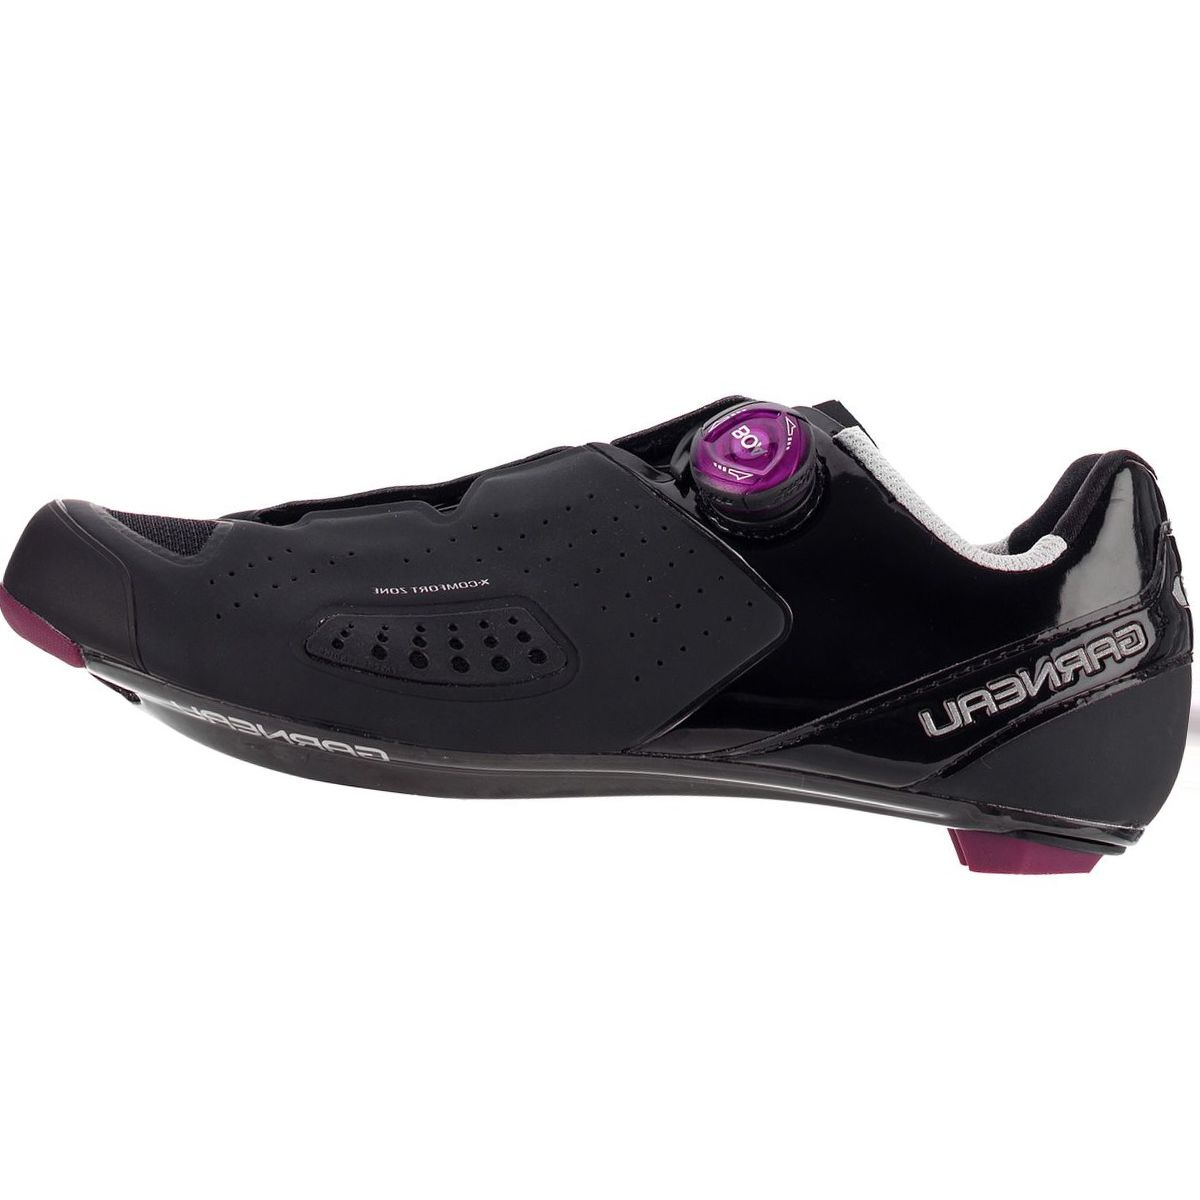 Louis Garneau Carbon LS-100 III Cycling Shoe - Women's